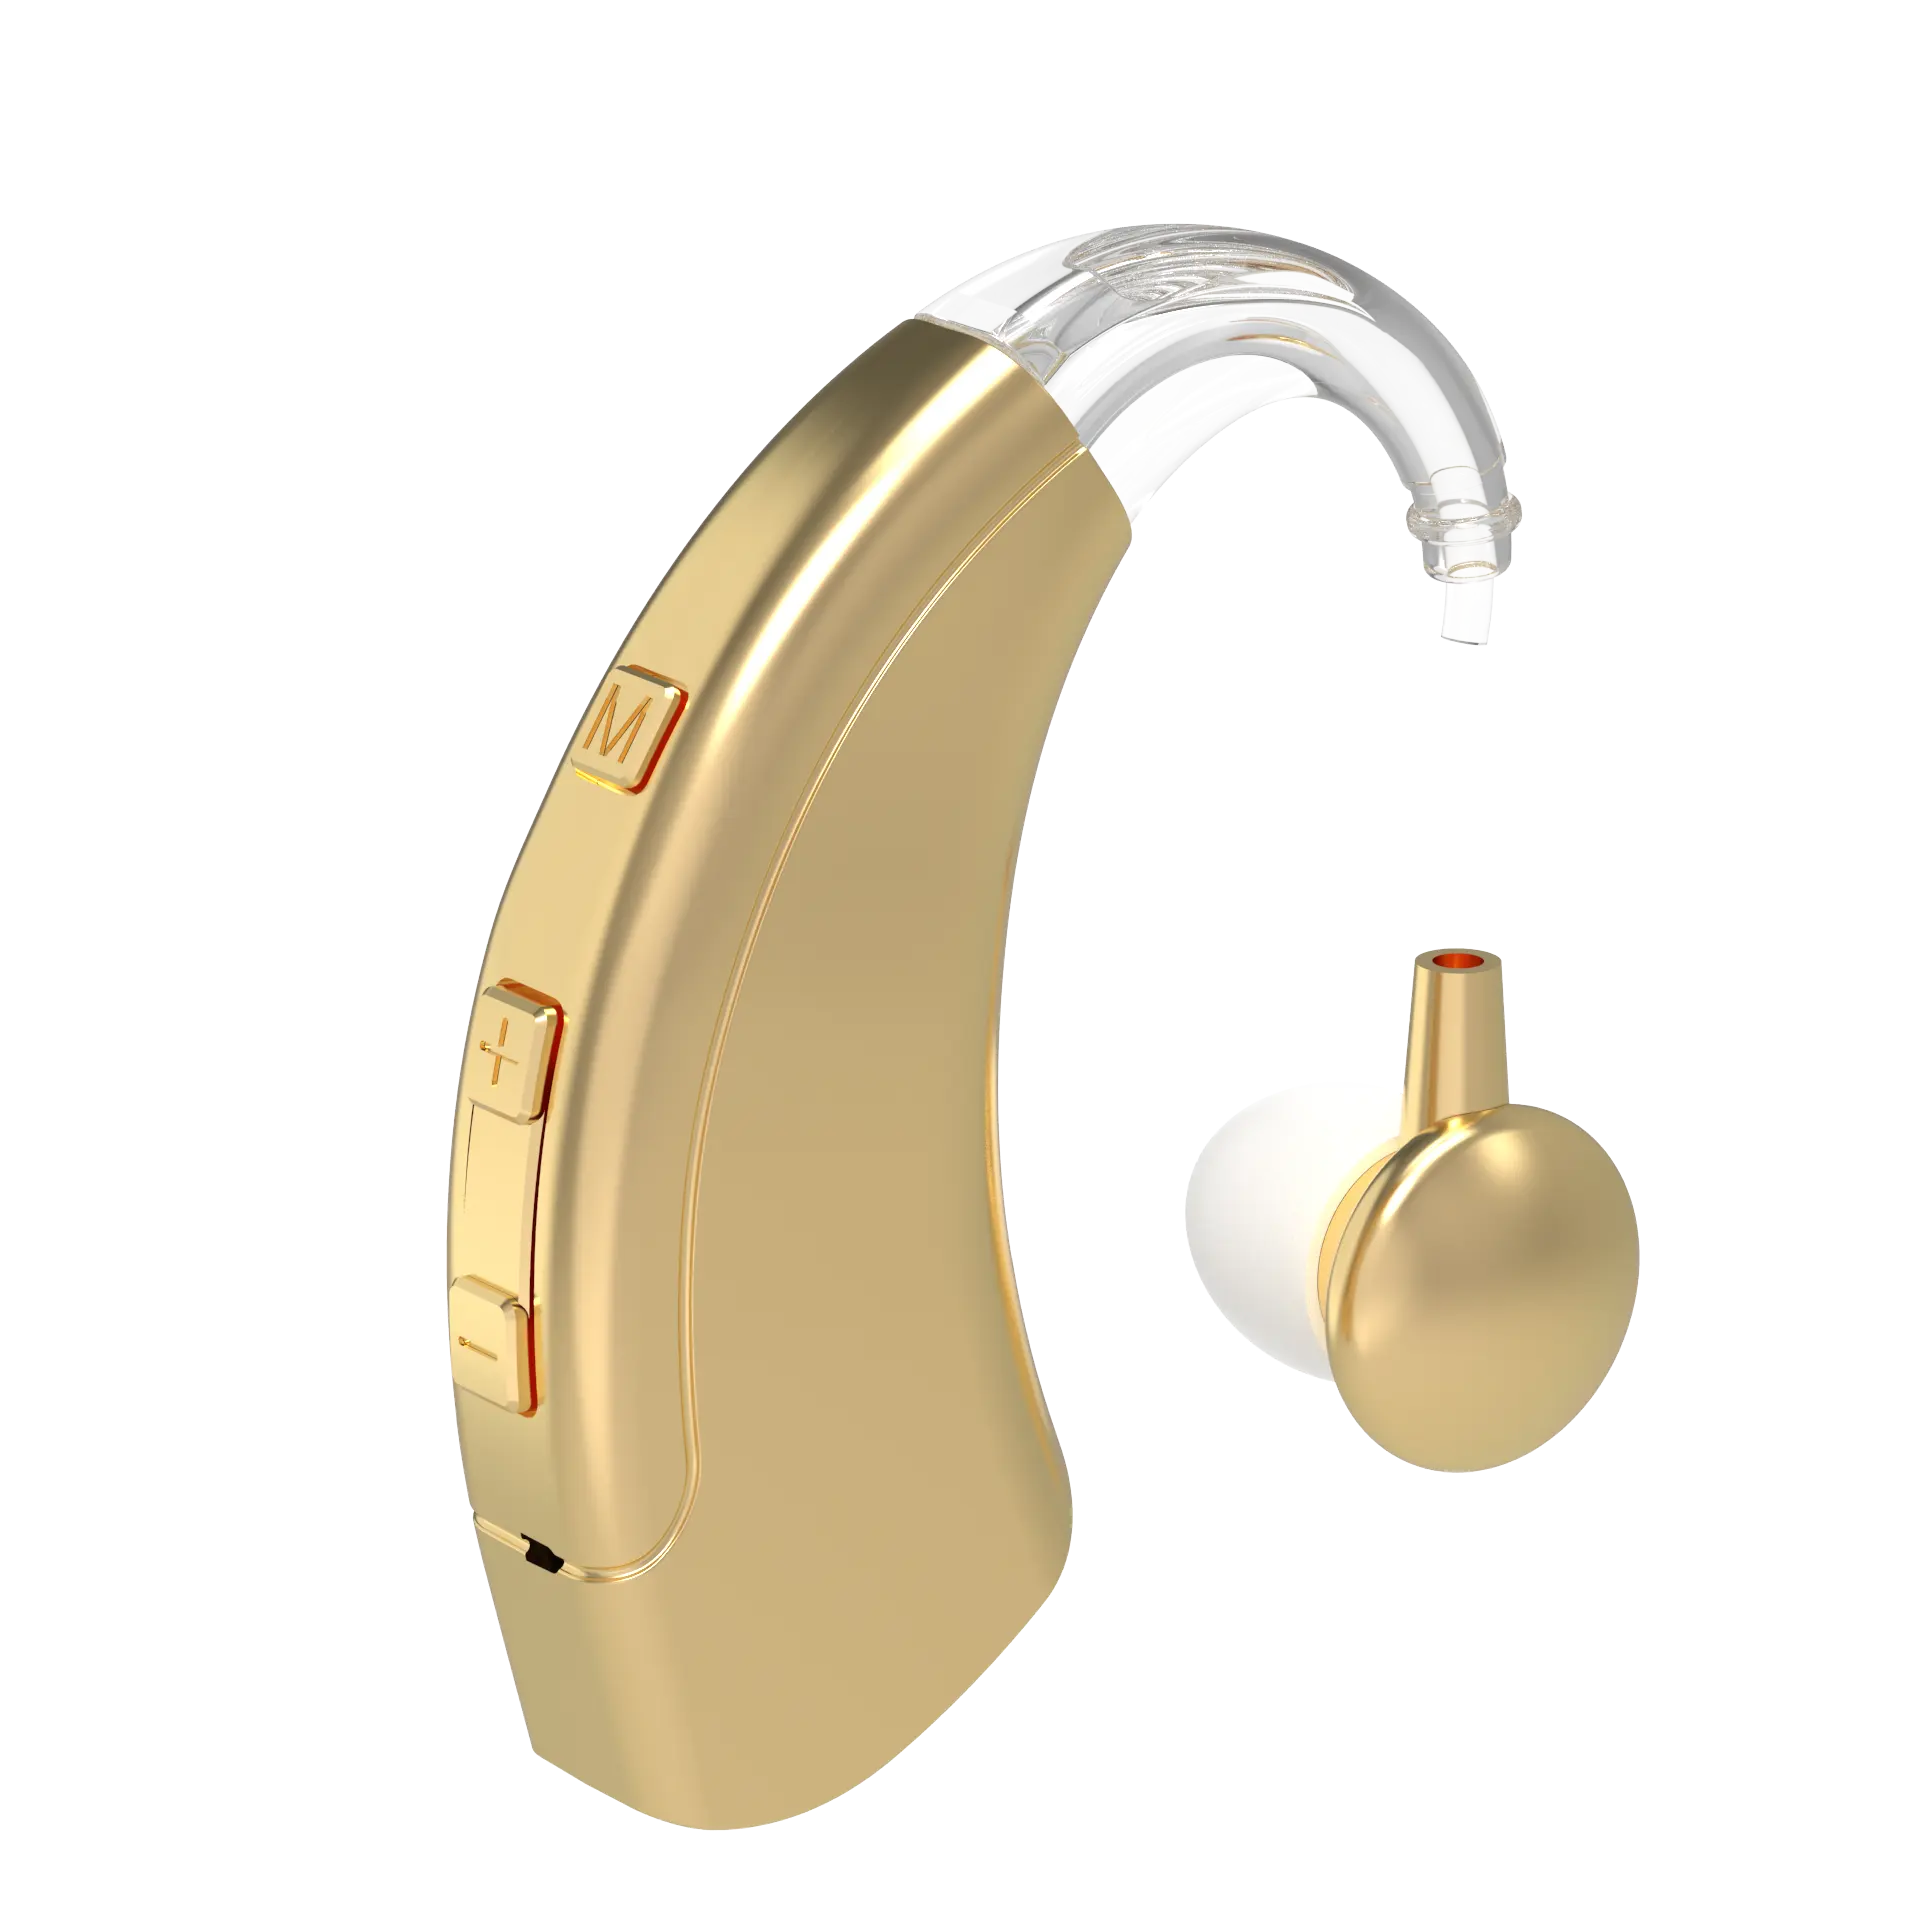 Alat bantu dengar BTE Mini, alat bantu dengar Digital dapat diisi ulang, penguat suara Tone dapat disesuaikan untuk orang tua dan tunarungu